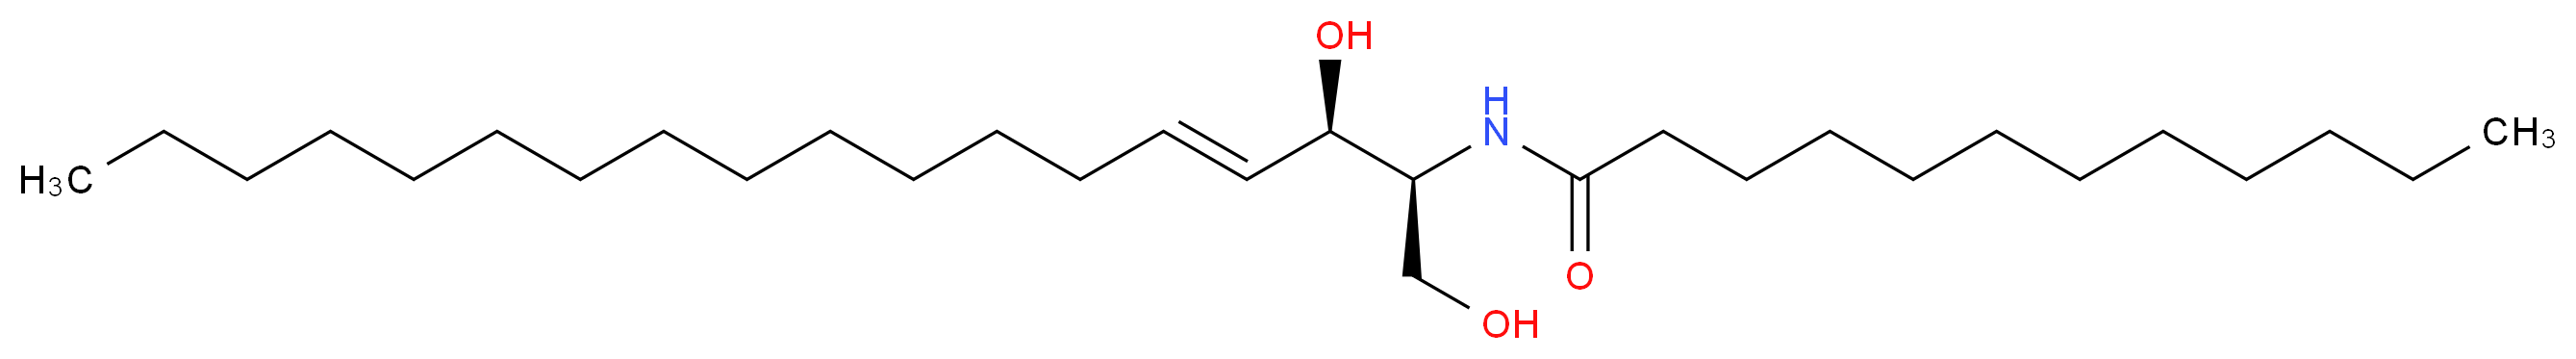 N-[(2S,3R,4E)-1,3-dihydroxyoctadec-4-en-2-yl]dodecanamide_分子结构_CAS_74713-60-3